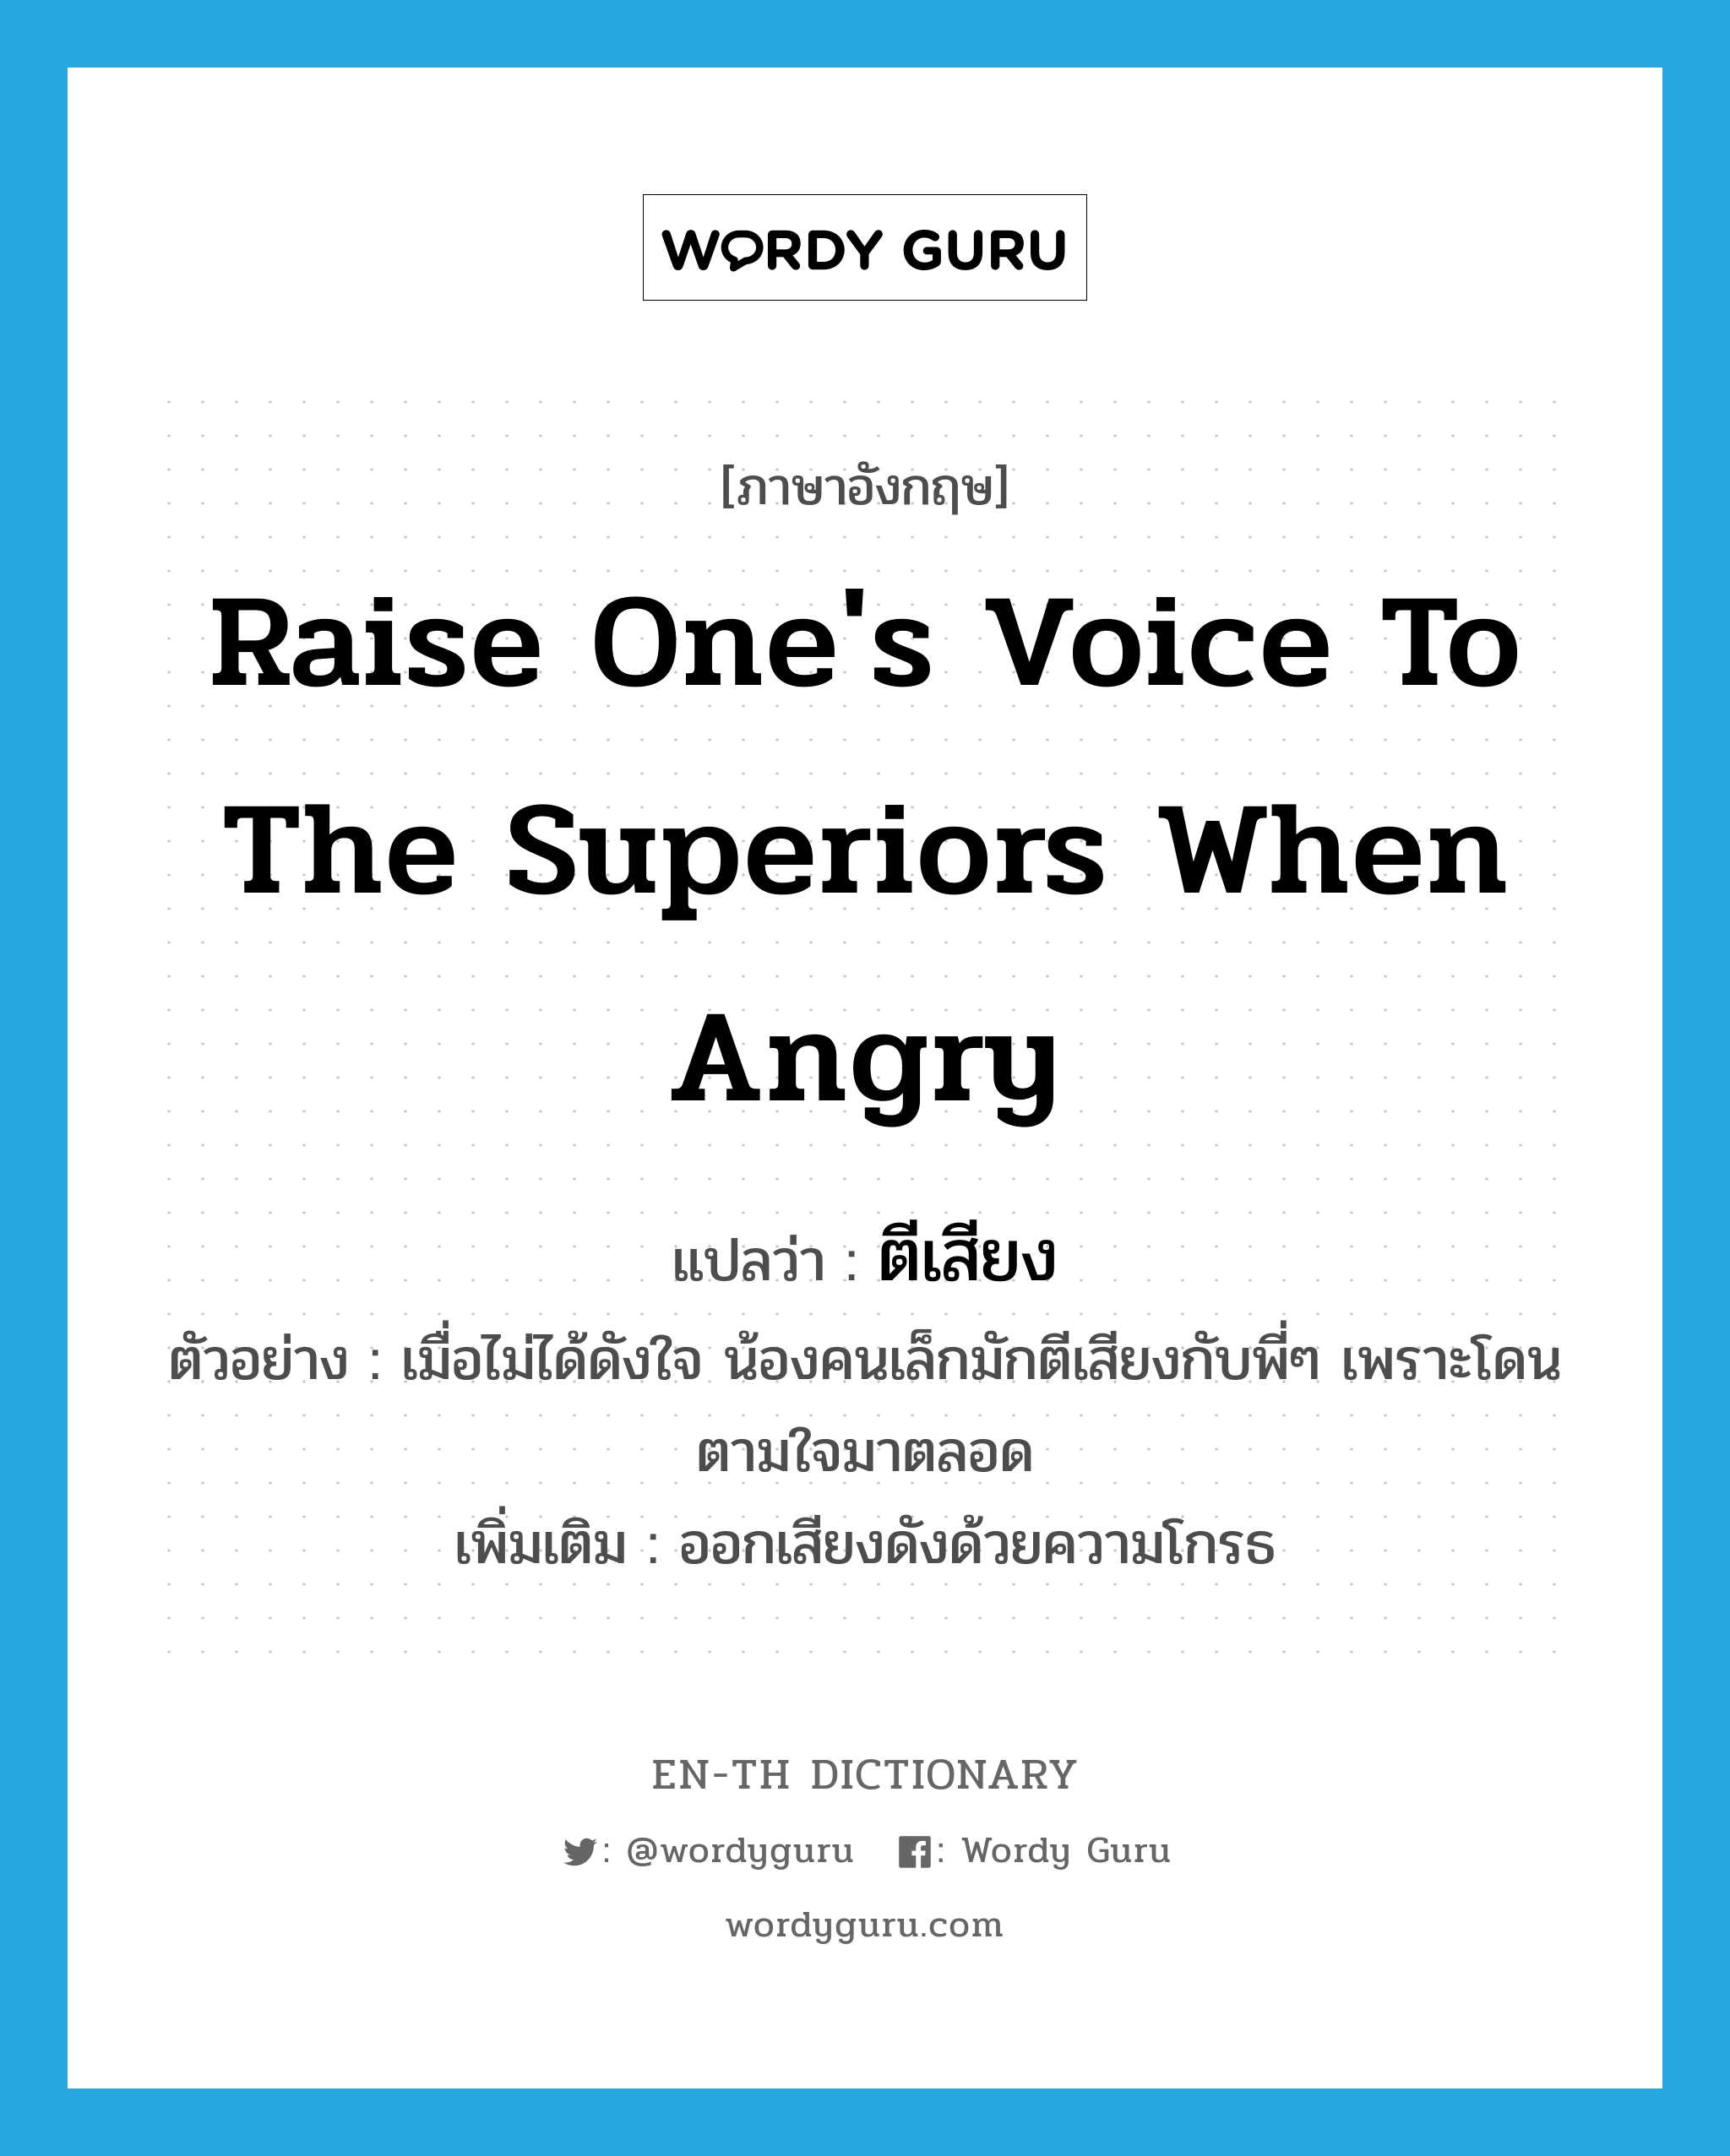 raise one's voice to the superiors when angry แปลว่า?, คำศัพท์ภาษาอังกฤษ raise one's voice to the superiors when angry แปลว่า ตีเสียง ประเภท V ตัวอย่าง เมื่อไม่ได้ดังใจ น้องคนเล็กมักตีเสียงกับพี่ๆ เพราะโดนตามใจมาตลอด เพิ่มเติม ออกเสียงดังด้วยความโกรธ หมวด V